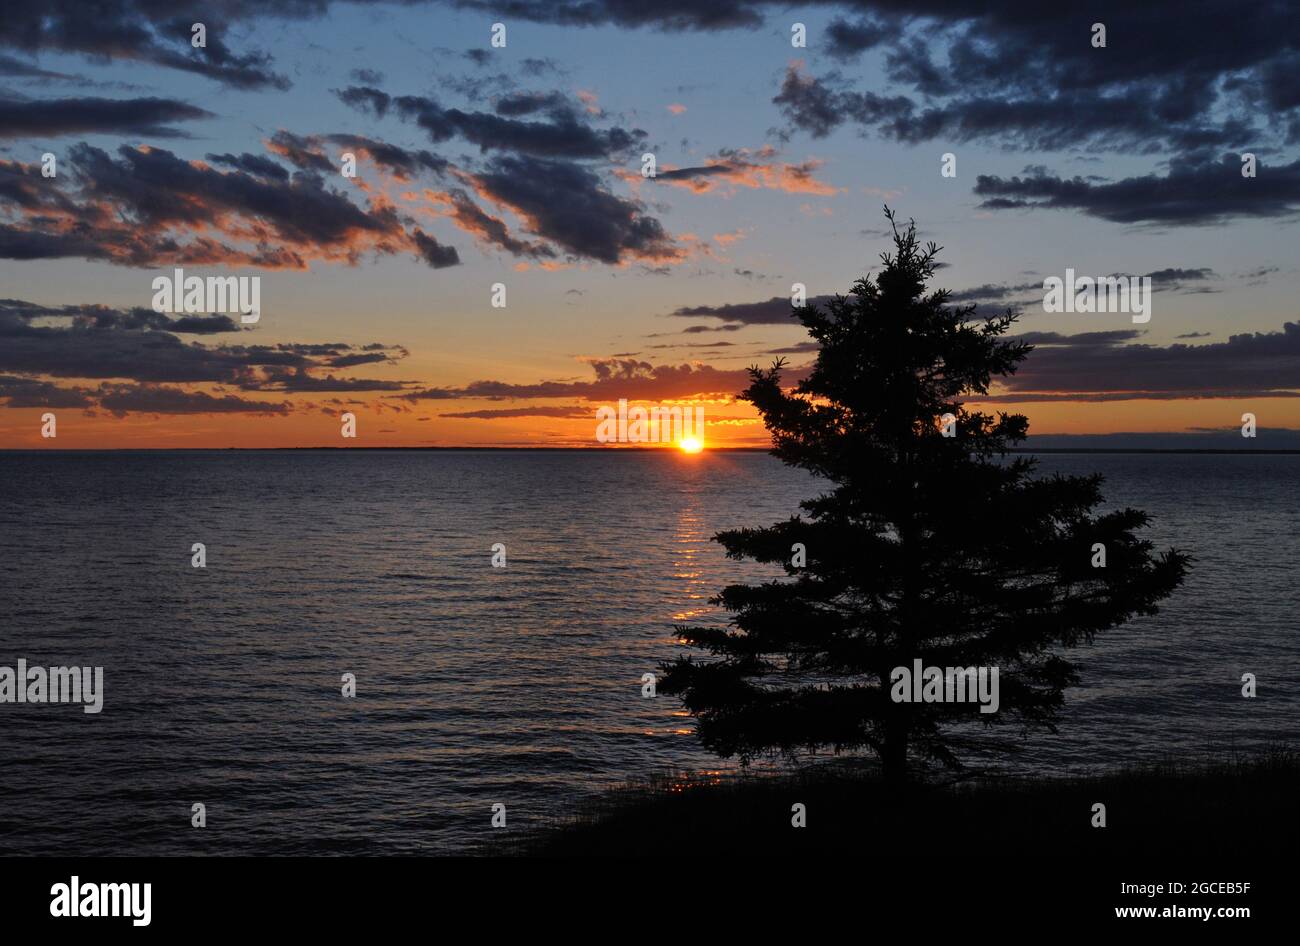 Ein einsamer Baum steht in Silhouette, als die Sonne über der Northumberland Strait auf Prince Edward Island untergeht. Stockfoto